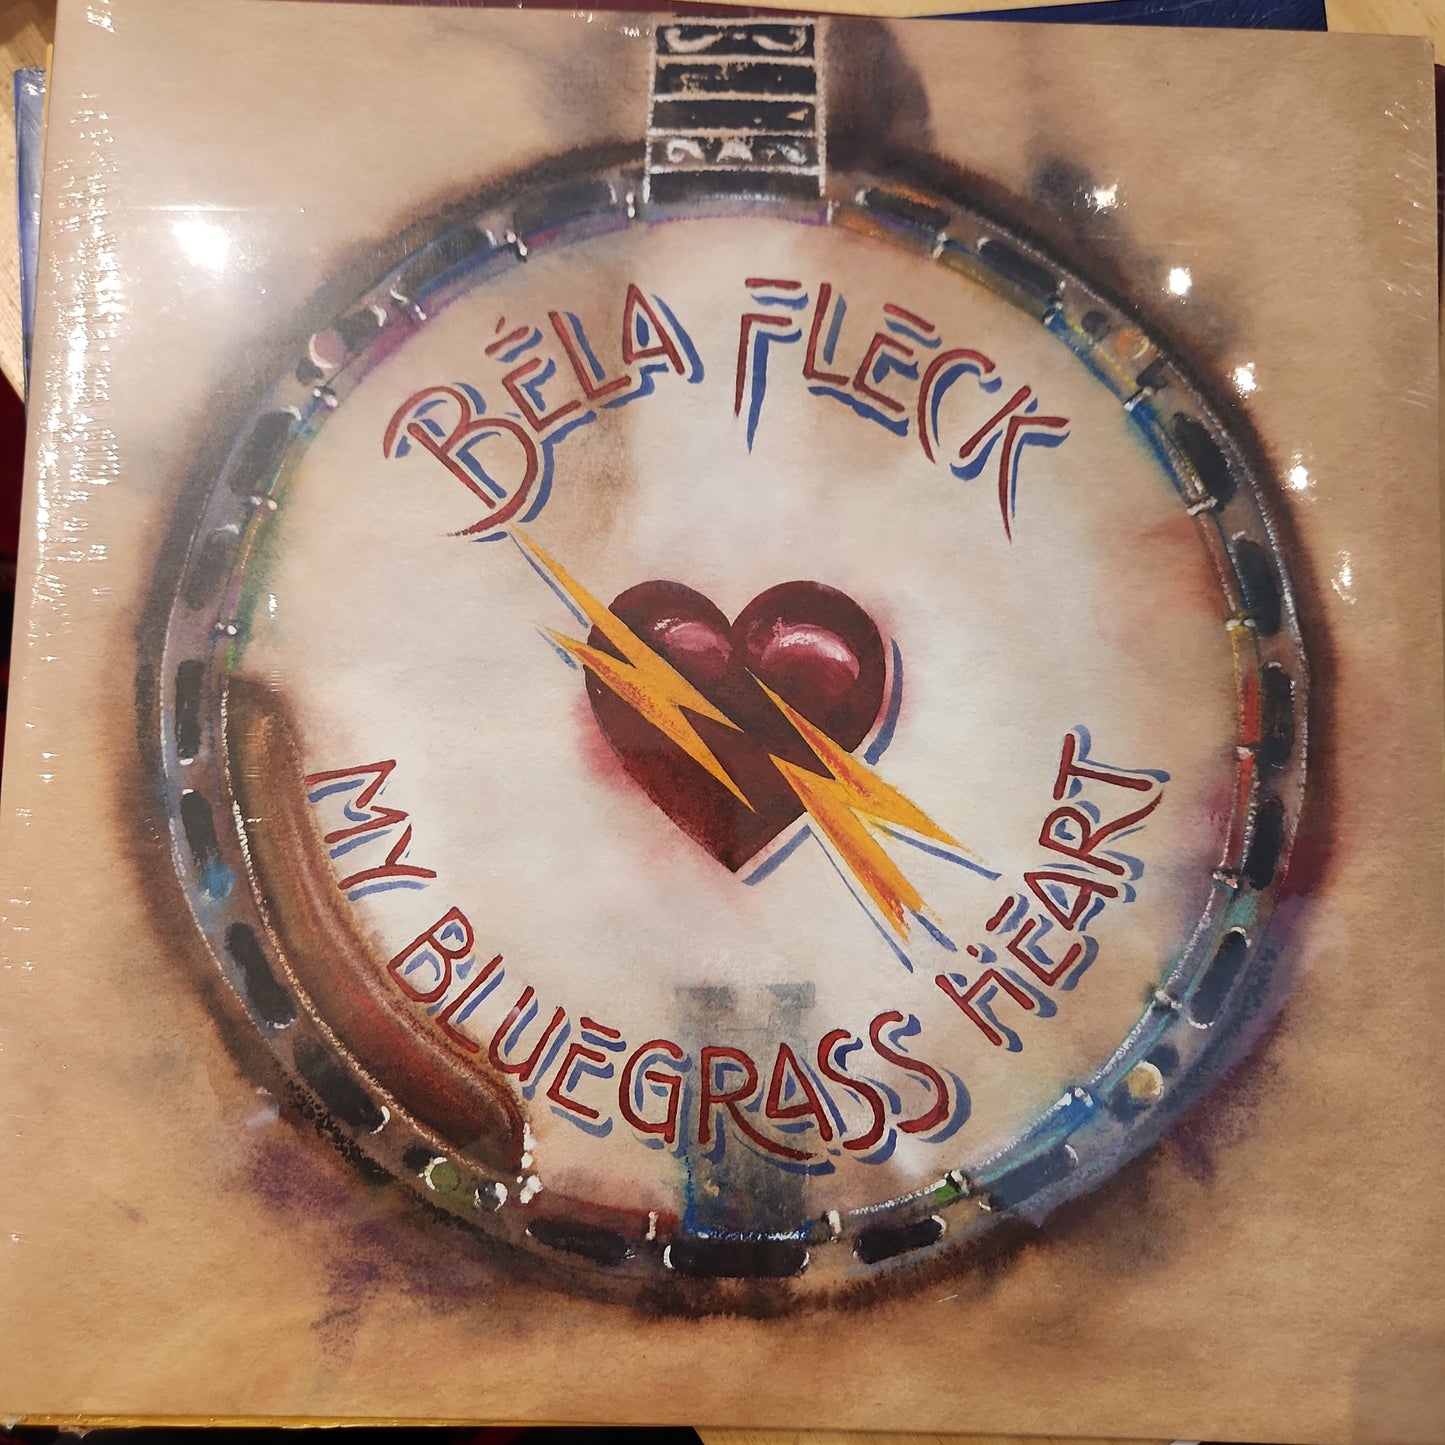 Bela Fleck - My Bluegrass heart - Vinyl LP